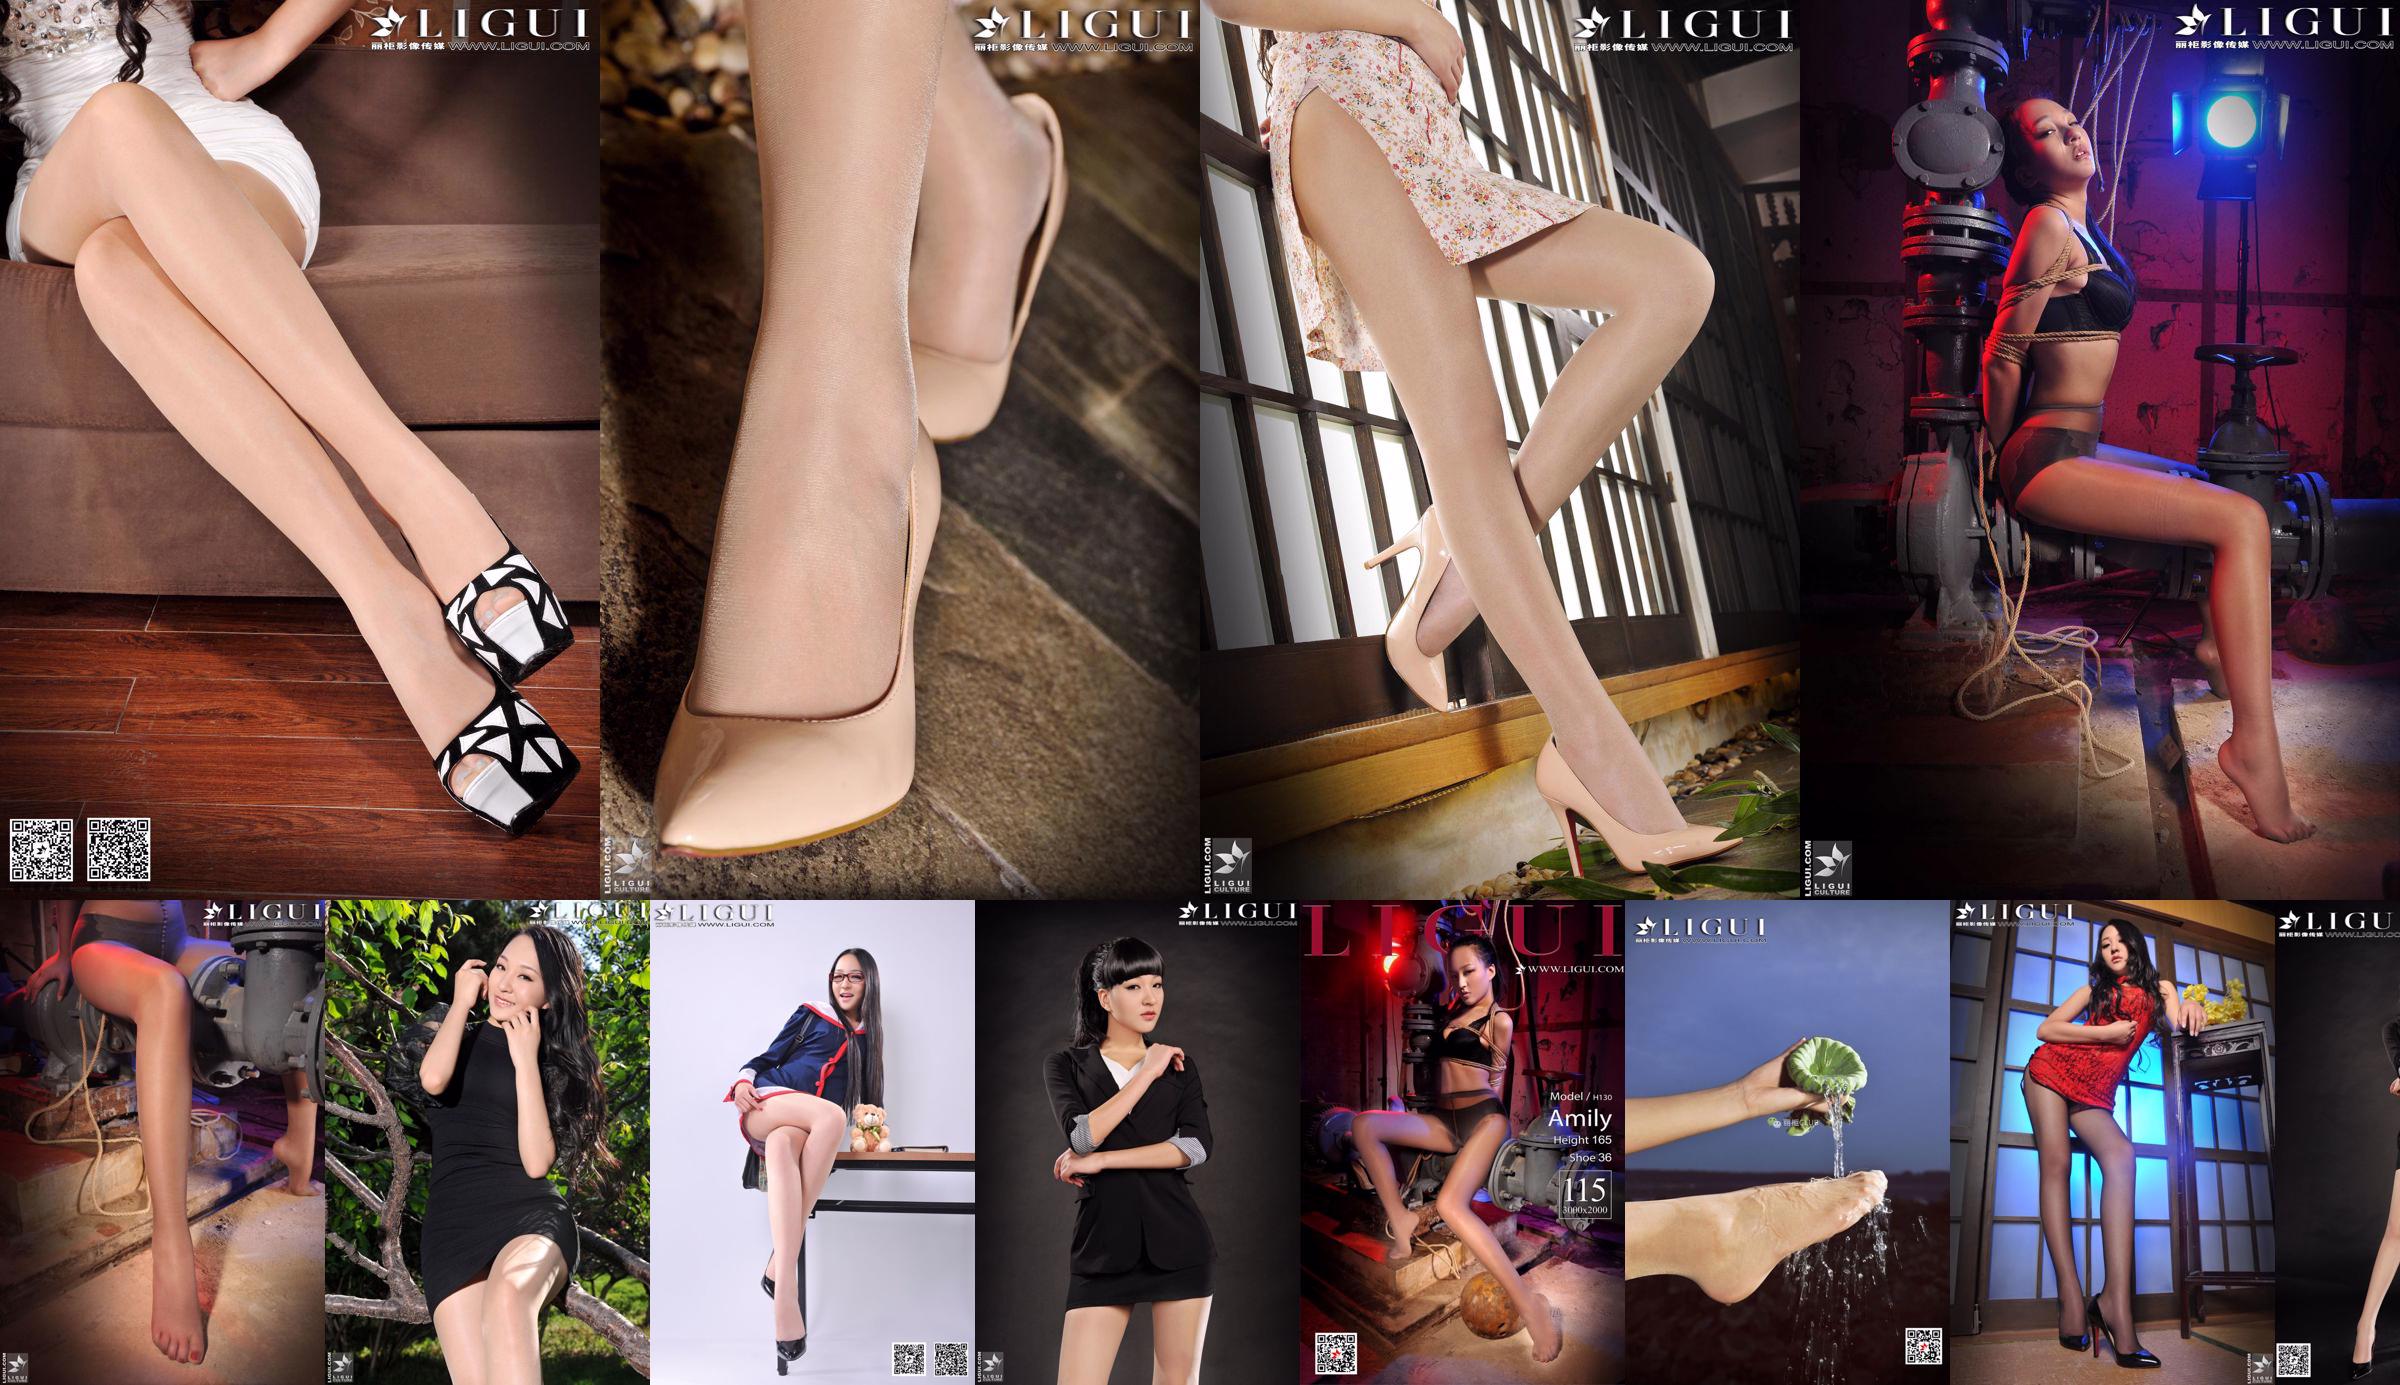 [丽 柜 Model voet LiGui] Model Amily "OL Professional Wear High Heel Foot" volledige collectie No.70bd82 Pagina 1